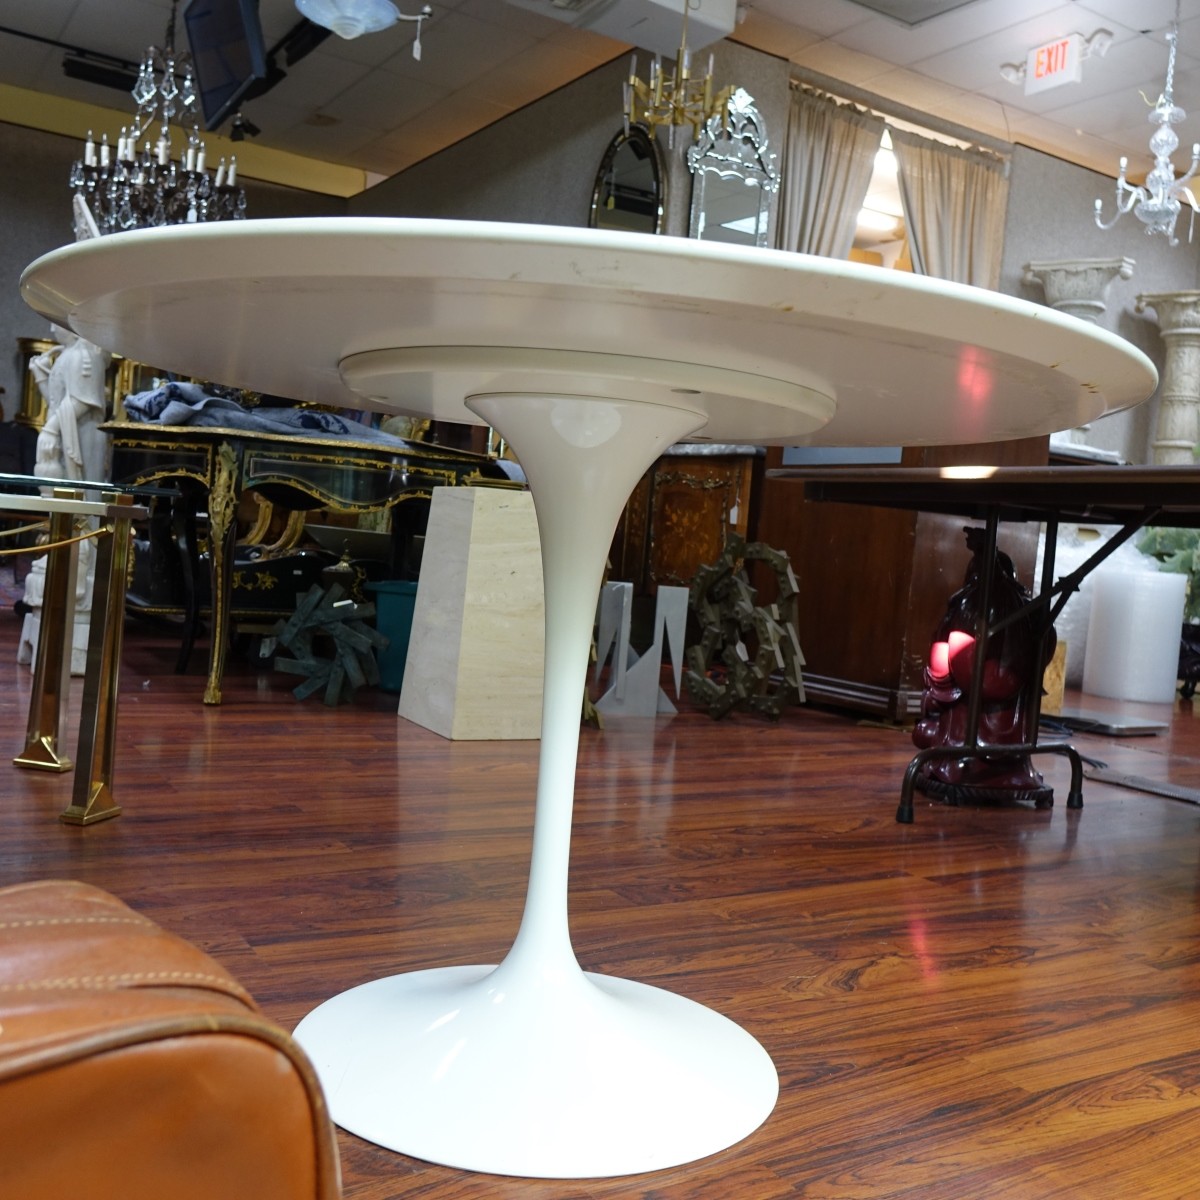 Style of Saarinen Table